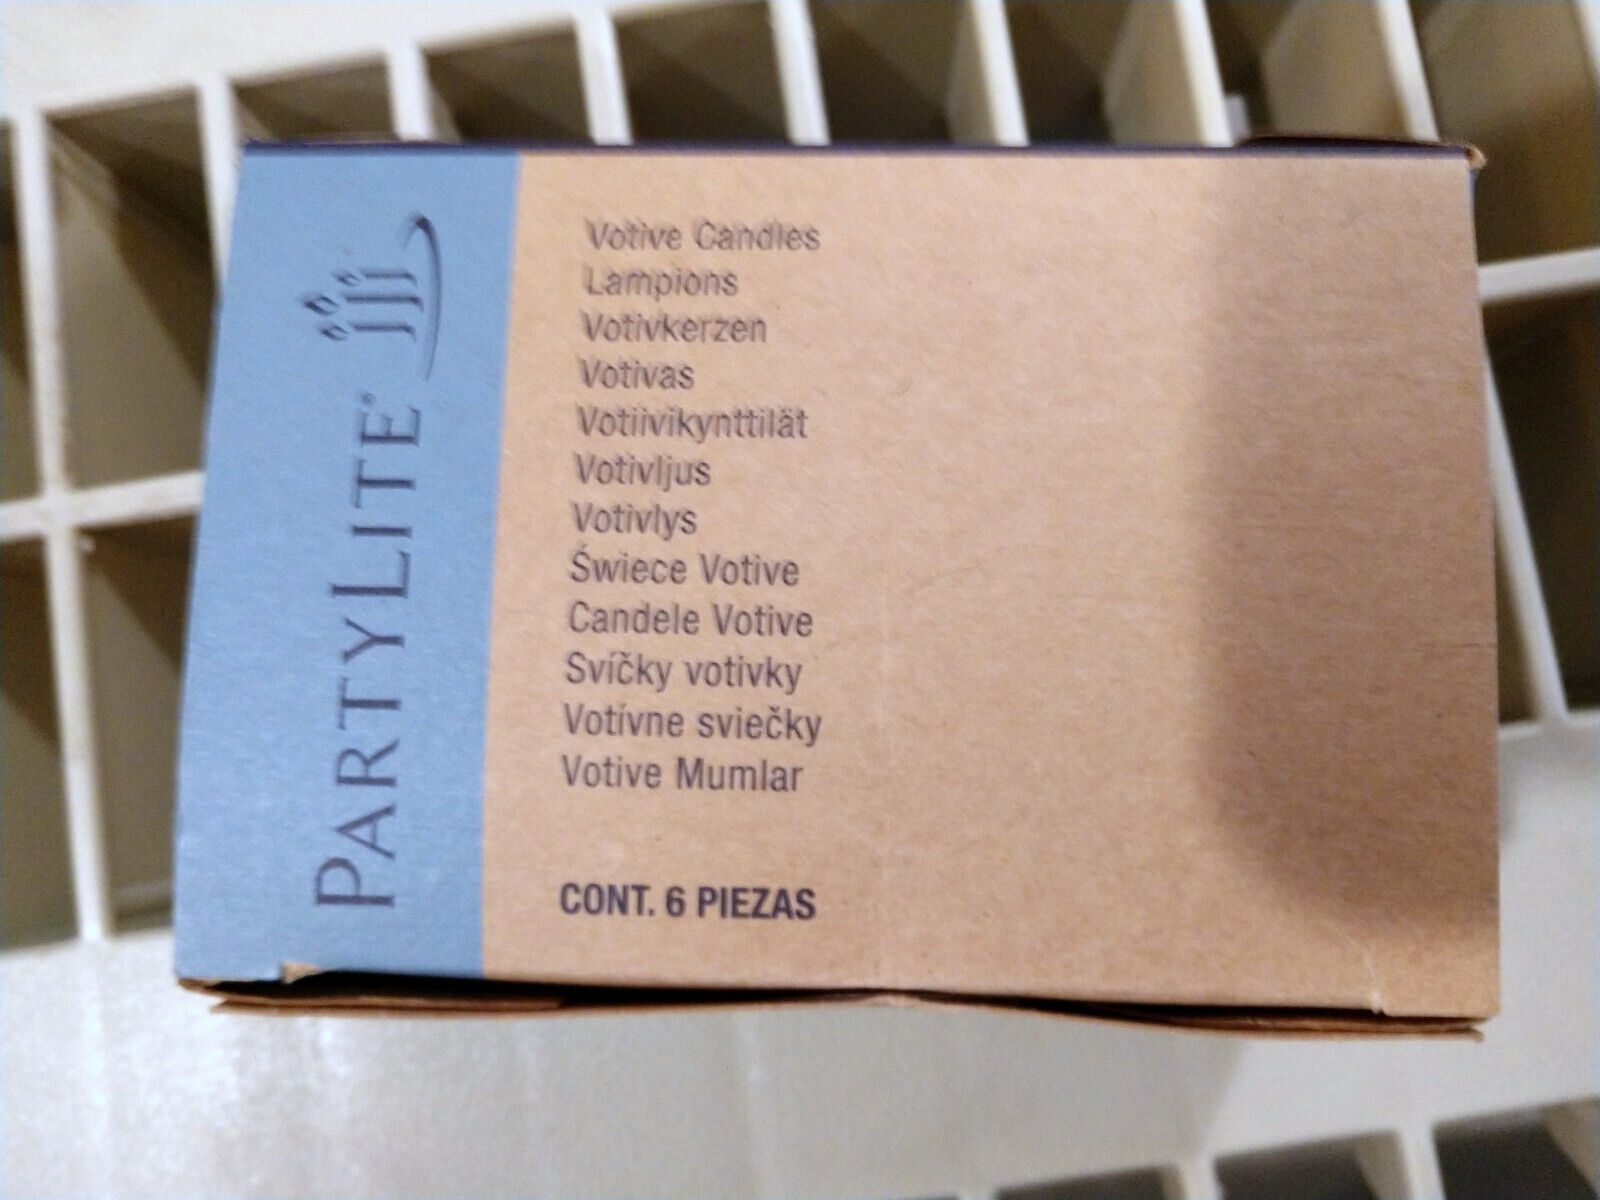 PartyLite Votives 1 Sealed Box of CINNAMON & BAYBERRY V06199